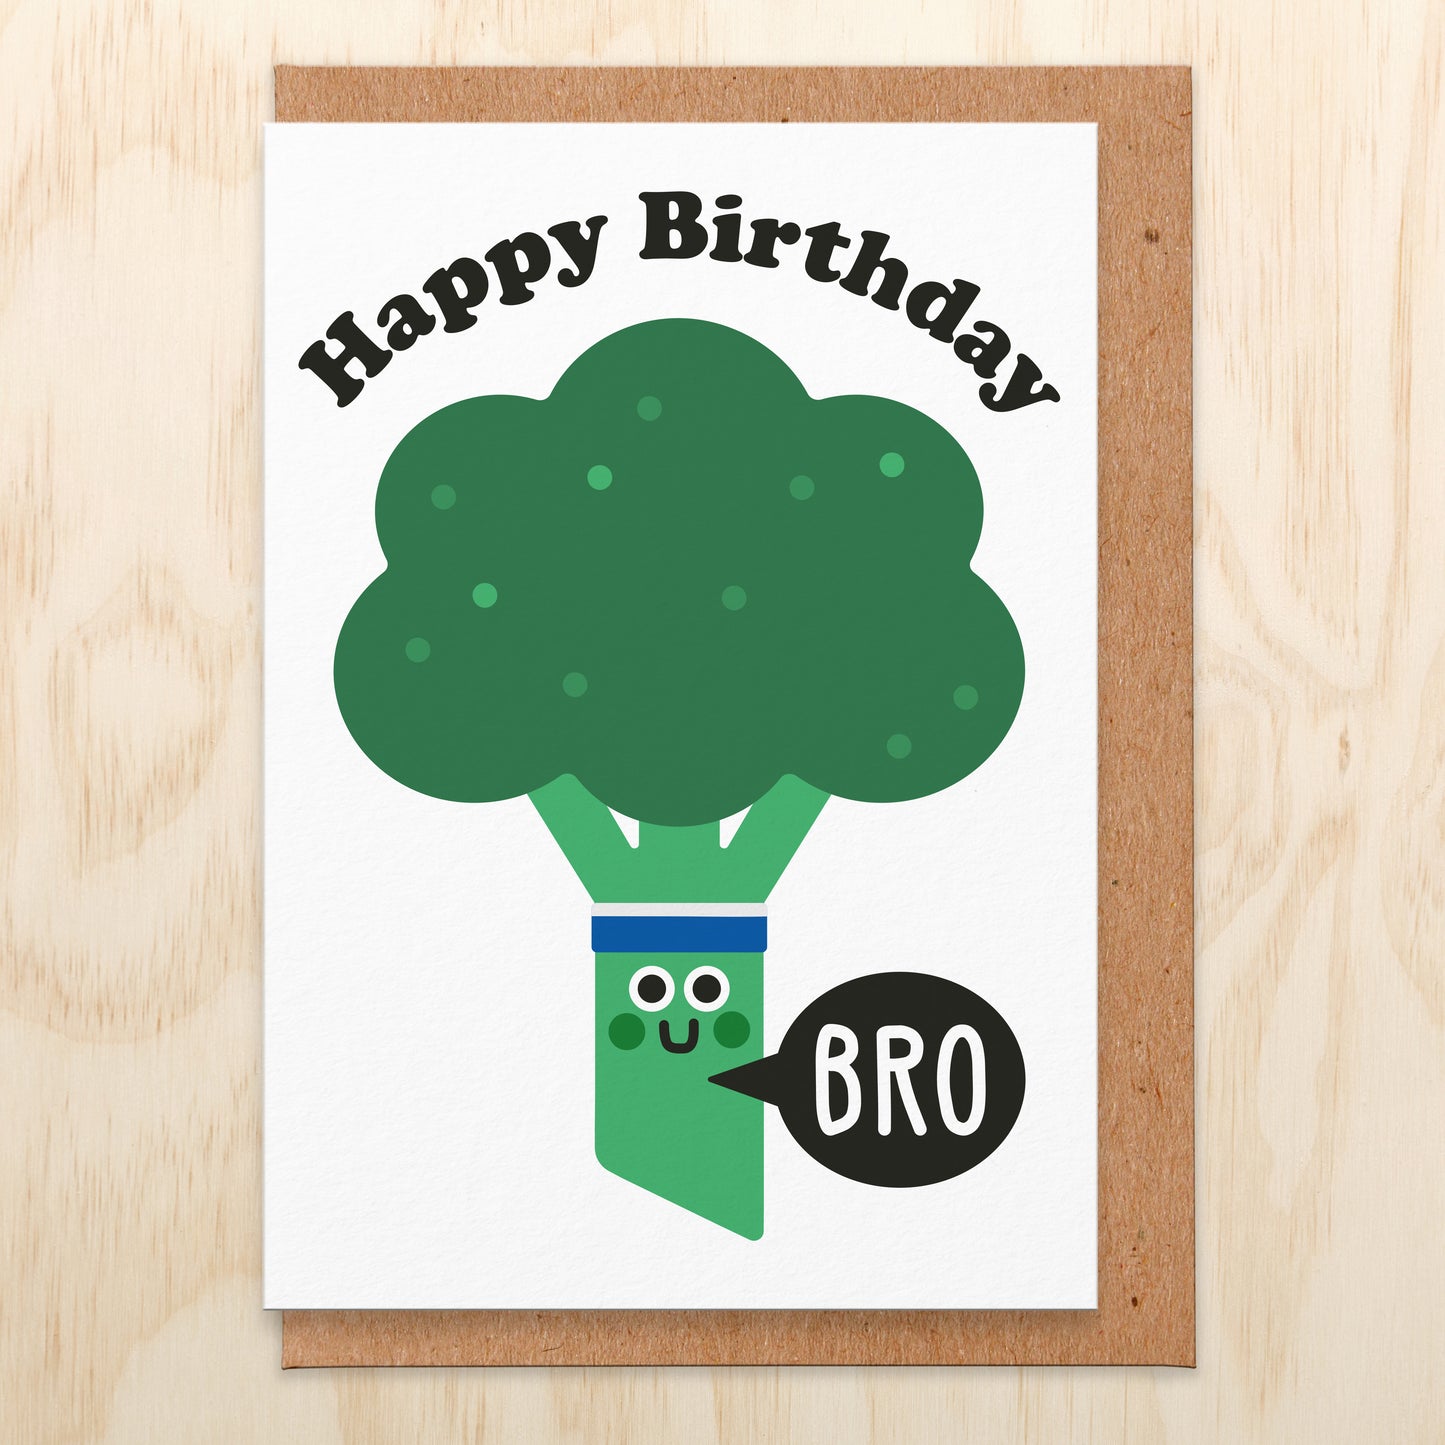 Bro' Birthday Card